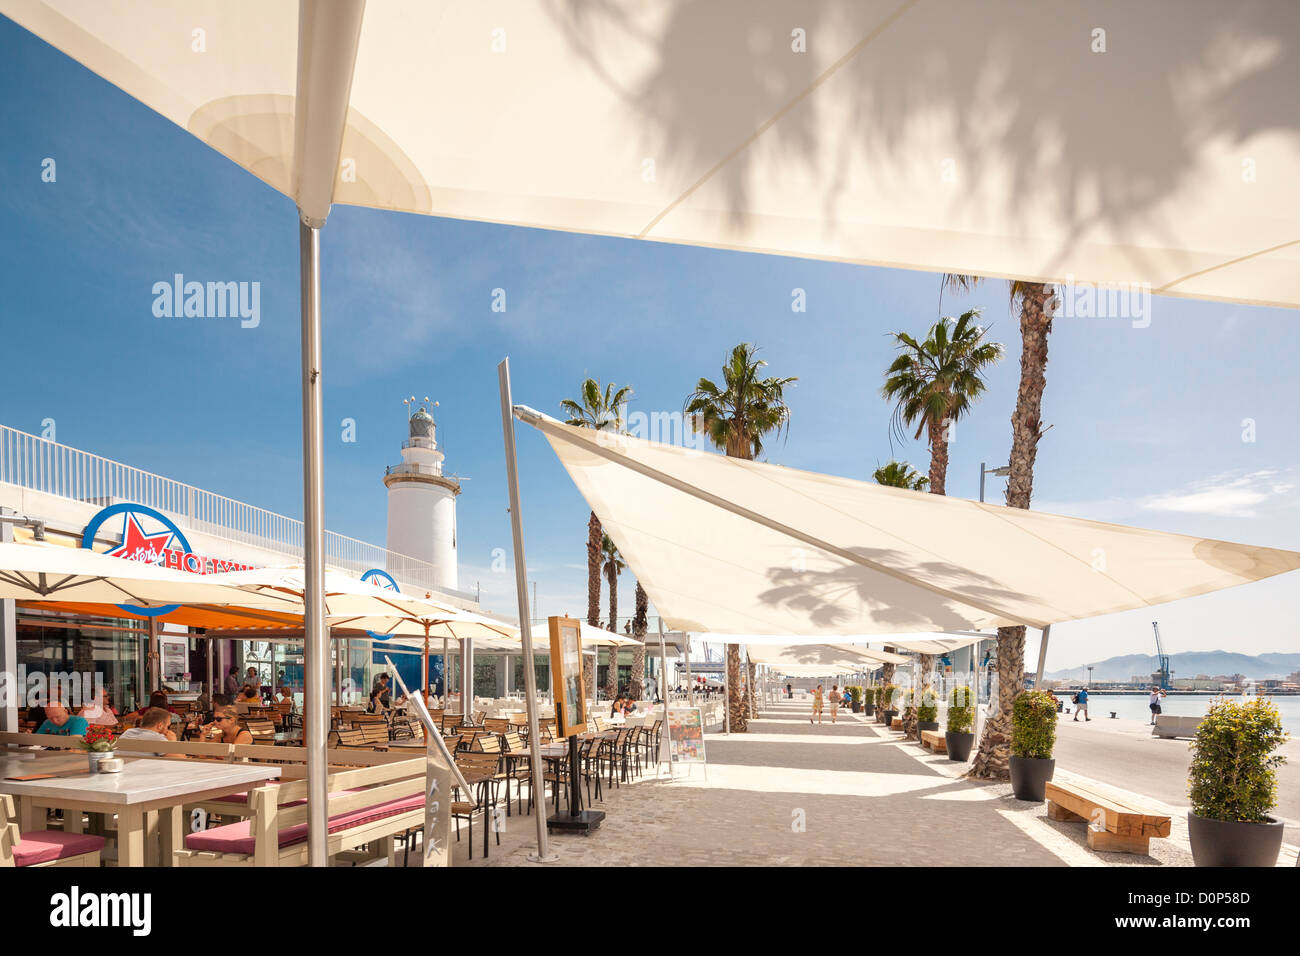 Malaga neuen Boulevard, Promenade Hafen Hafen Kai 1 ein Kreuzfahrt-Hafenterminal. Leuchtturm im freien Bars und Restaurants. Stockfoto